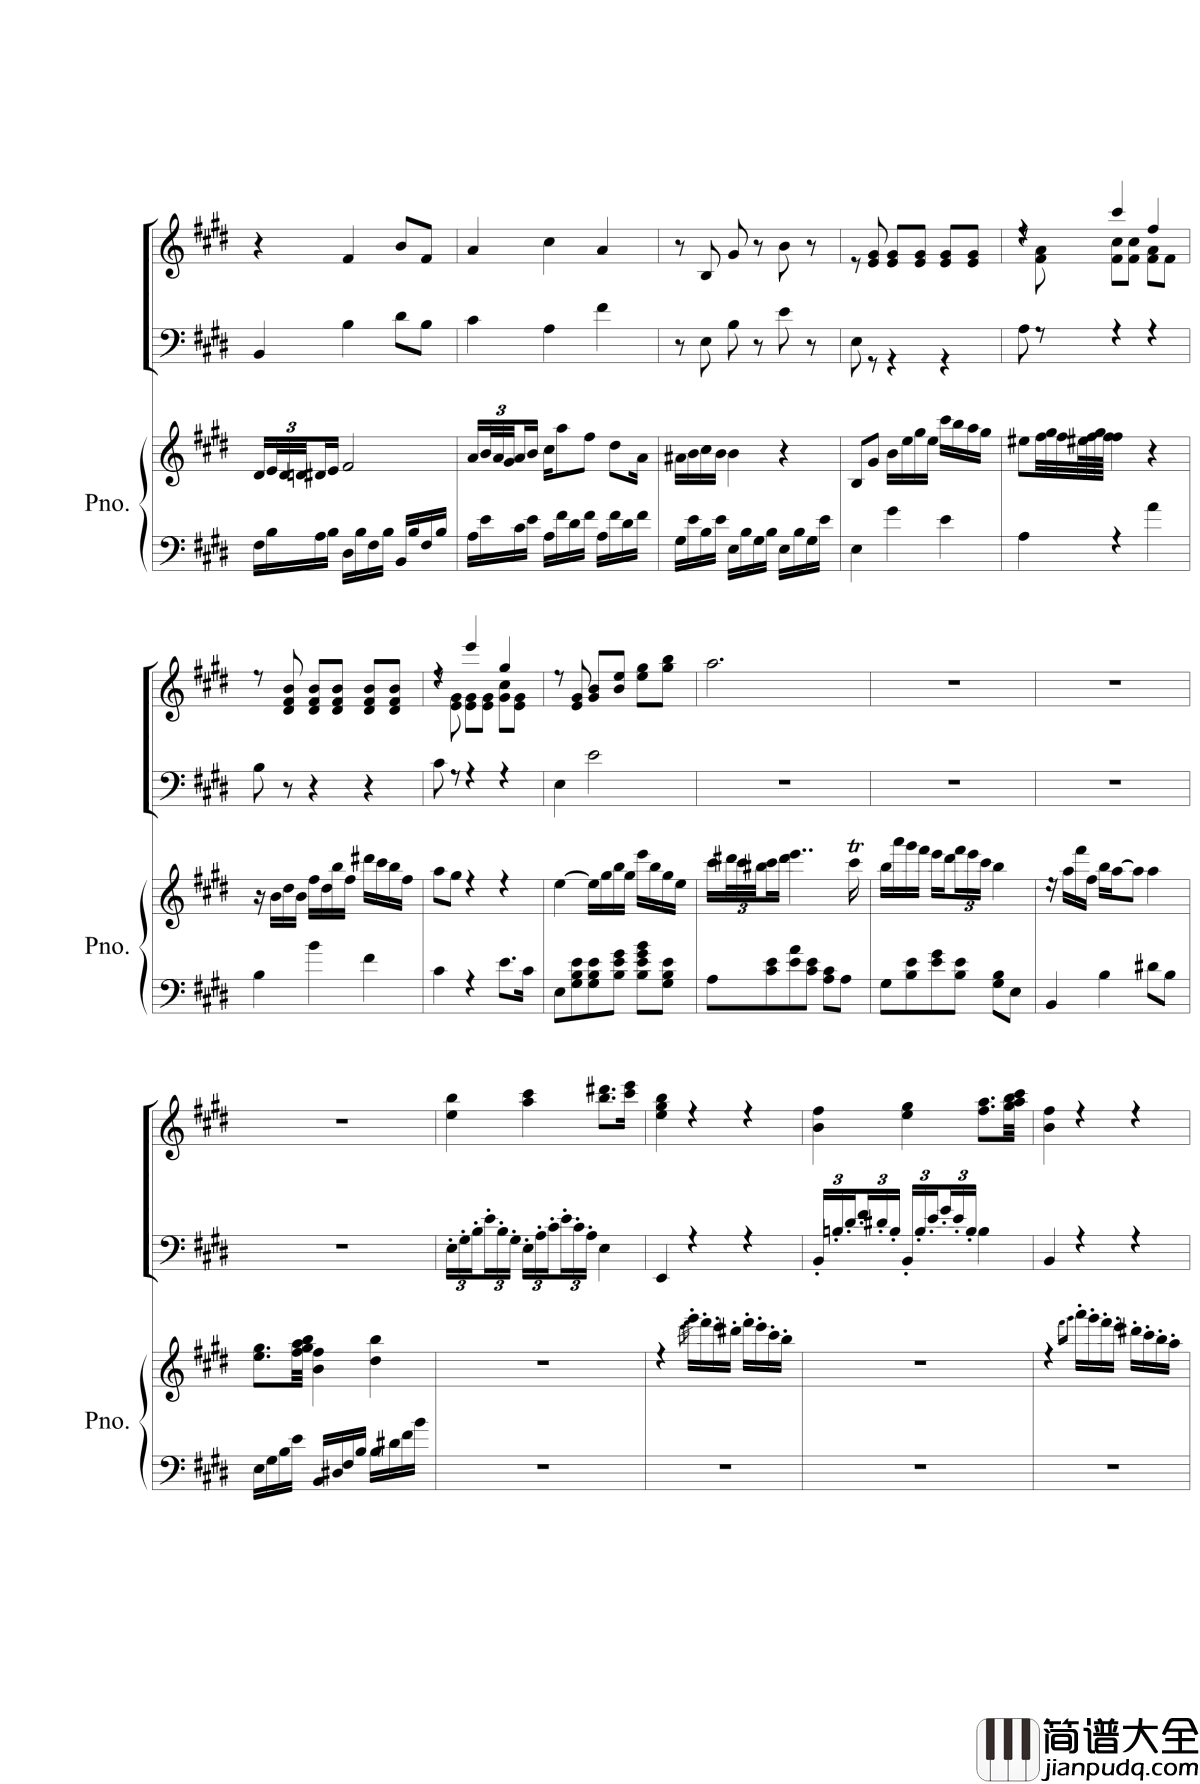 Piano_Concerto_No.2_钢琴谱_mov.2_nzh1934